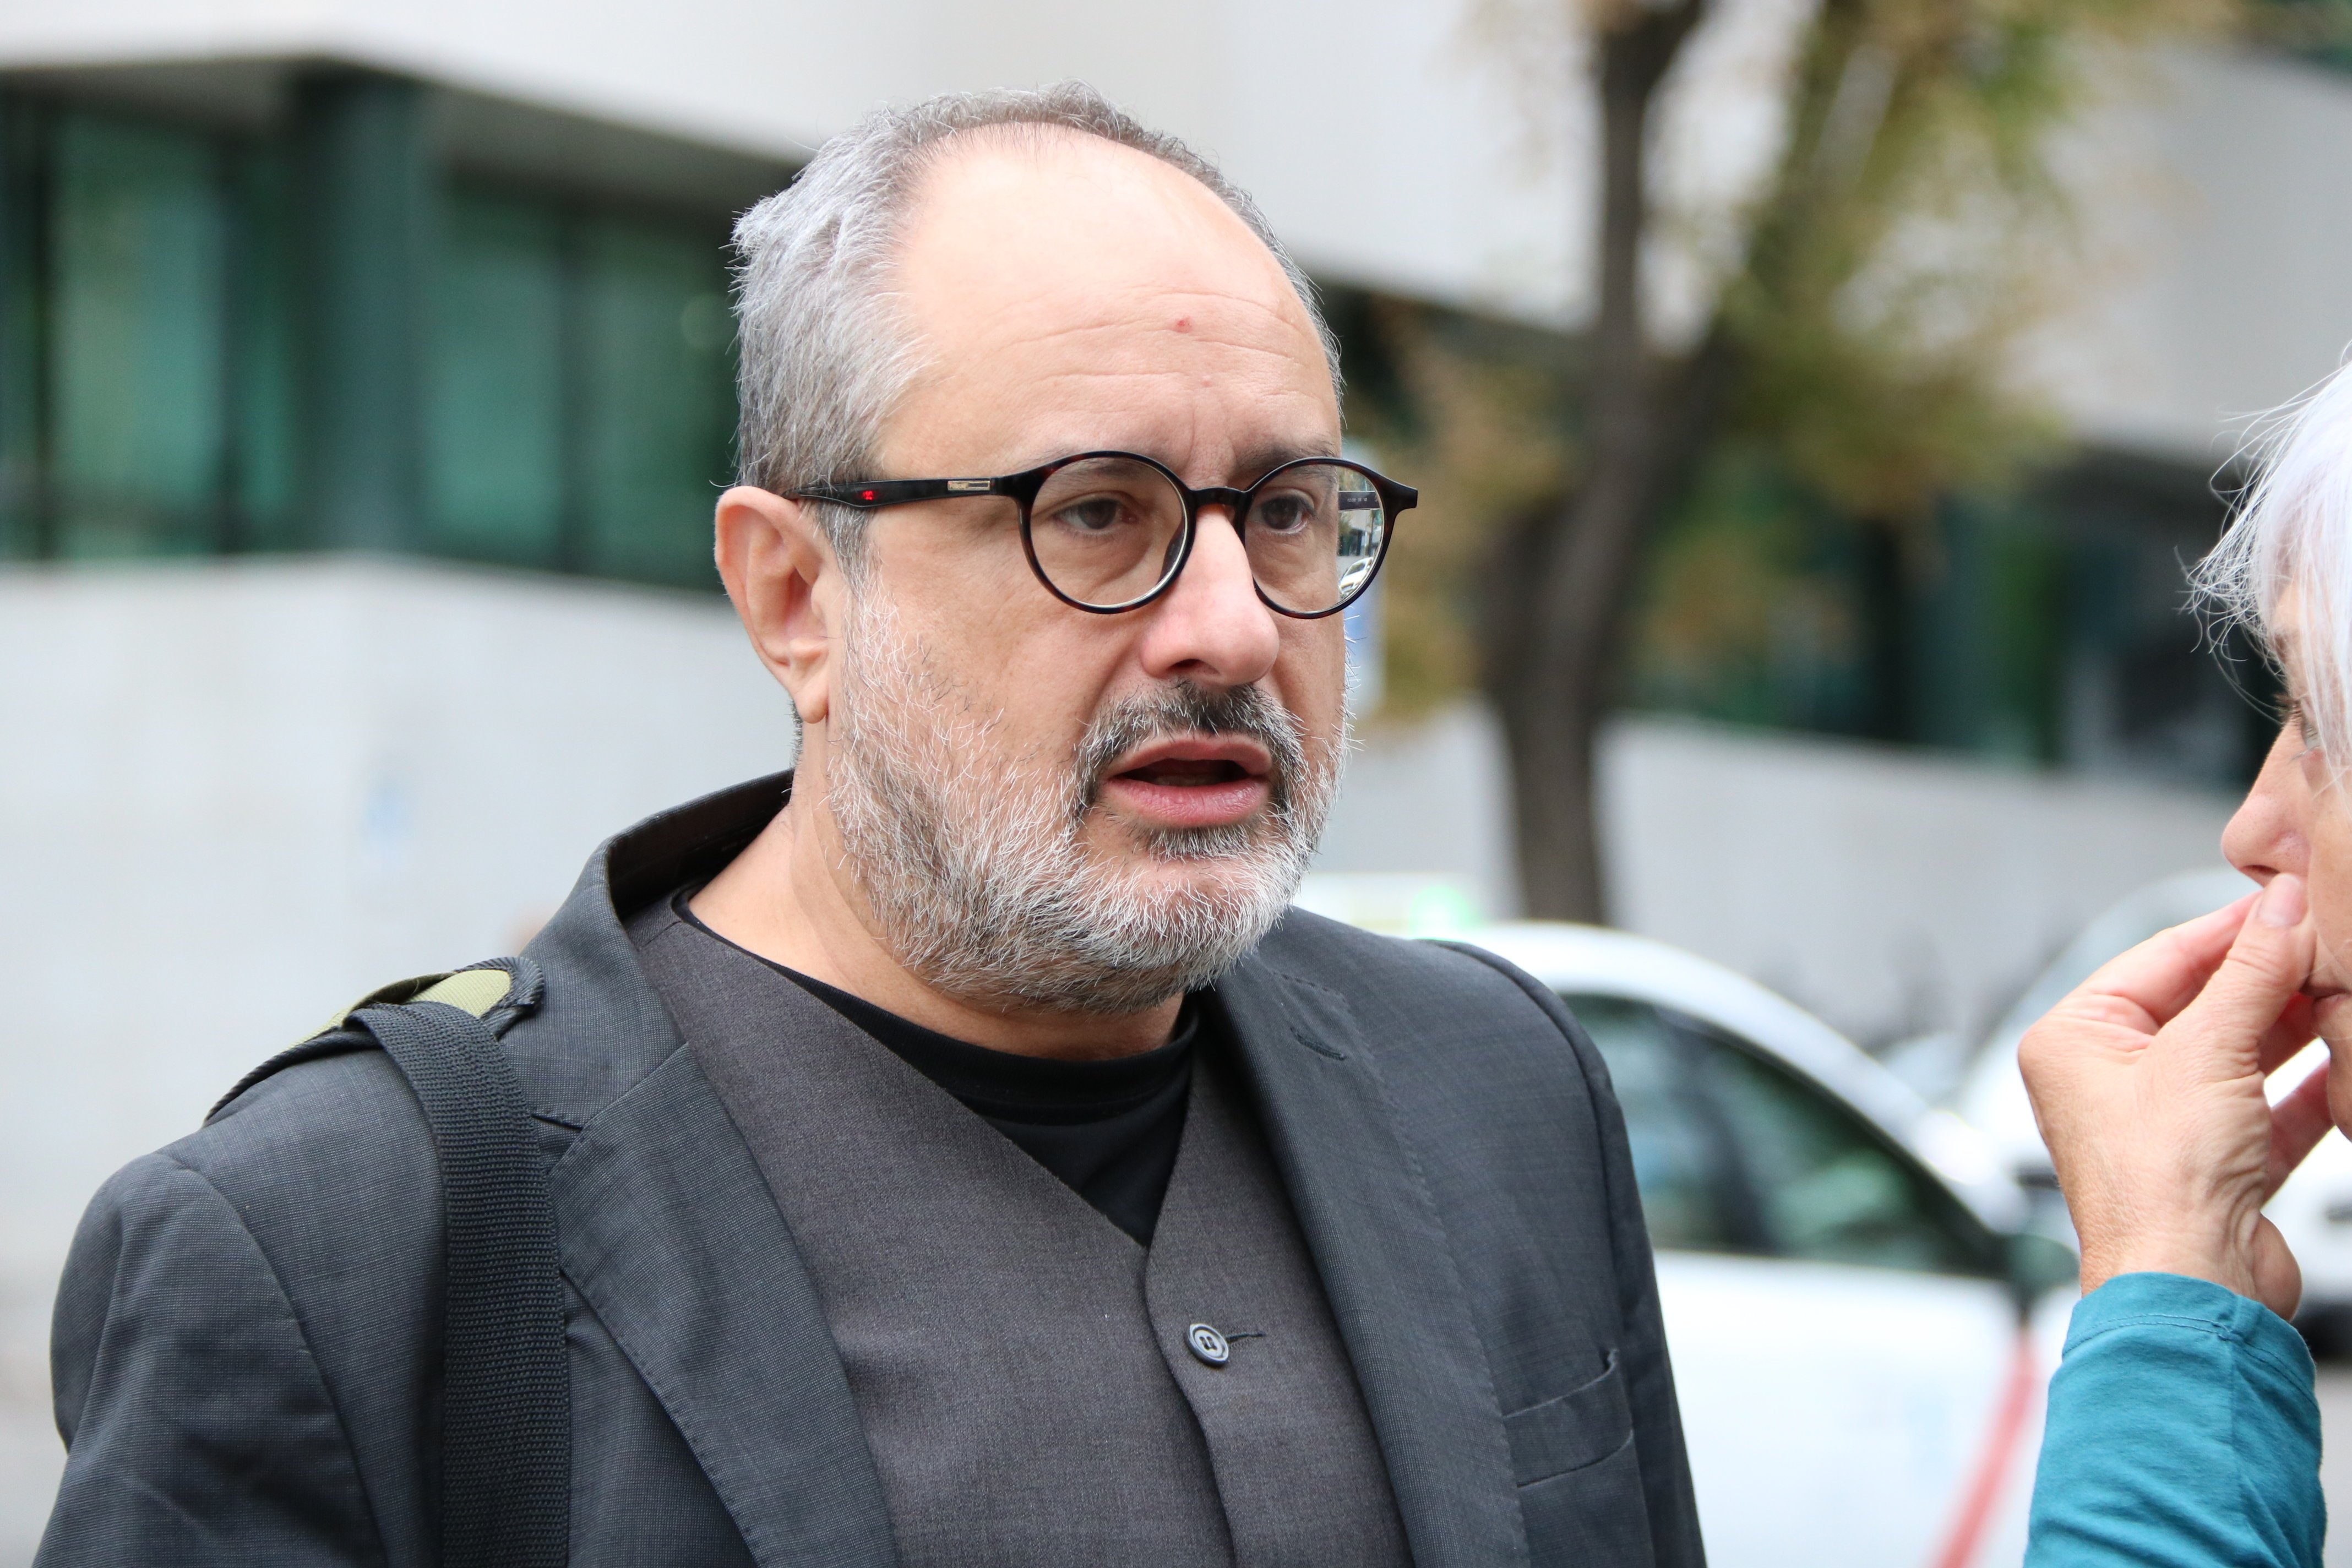 Baños afirma que pedirá la anulación de su juicio por impedirle hablar en catalán